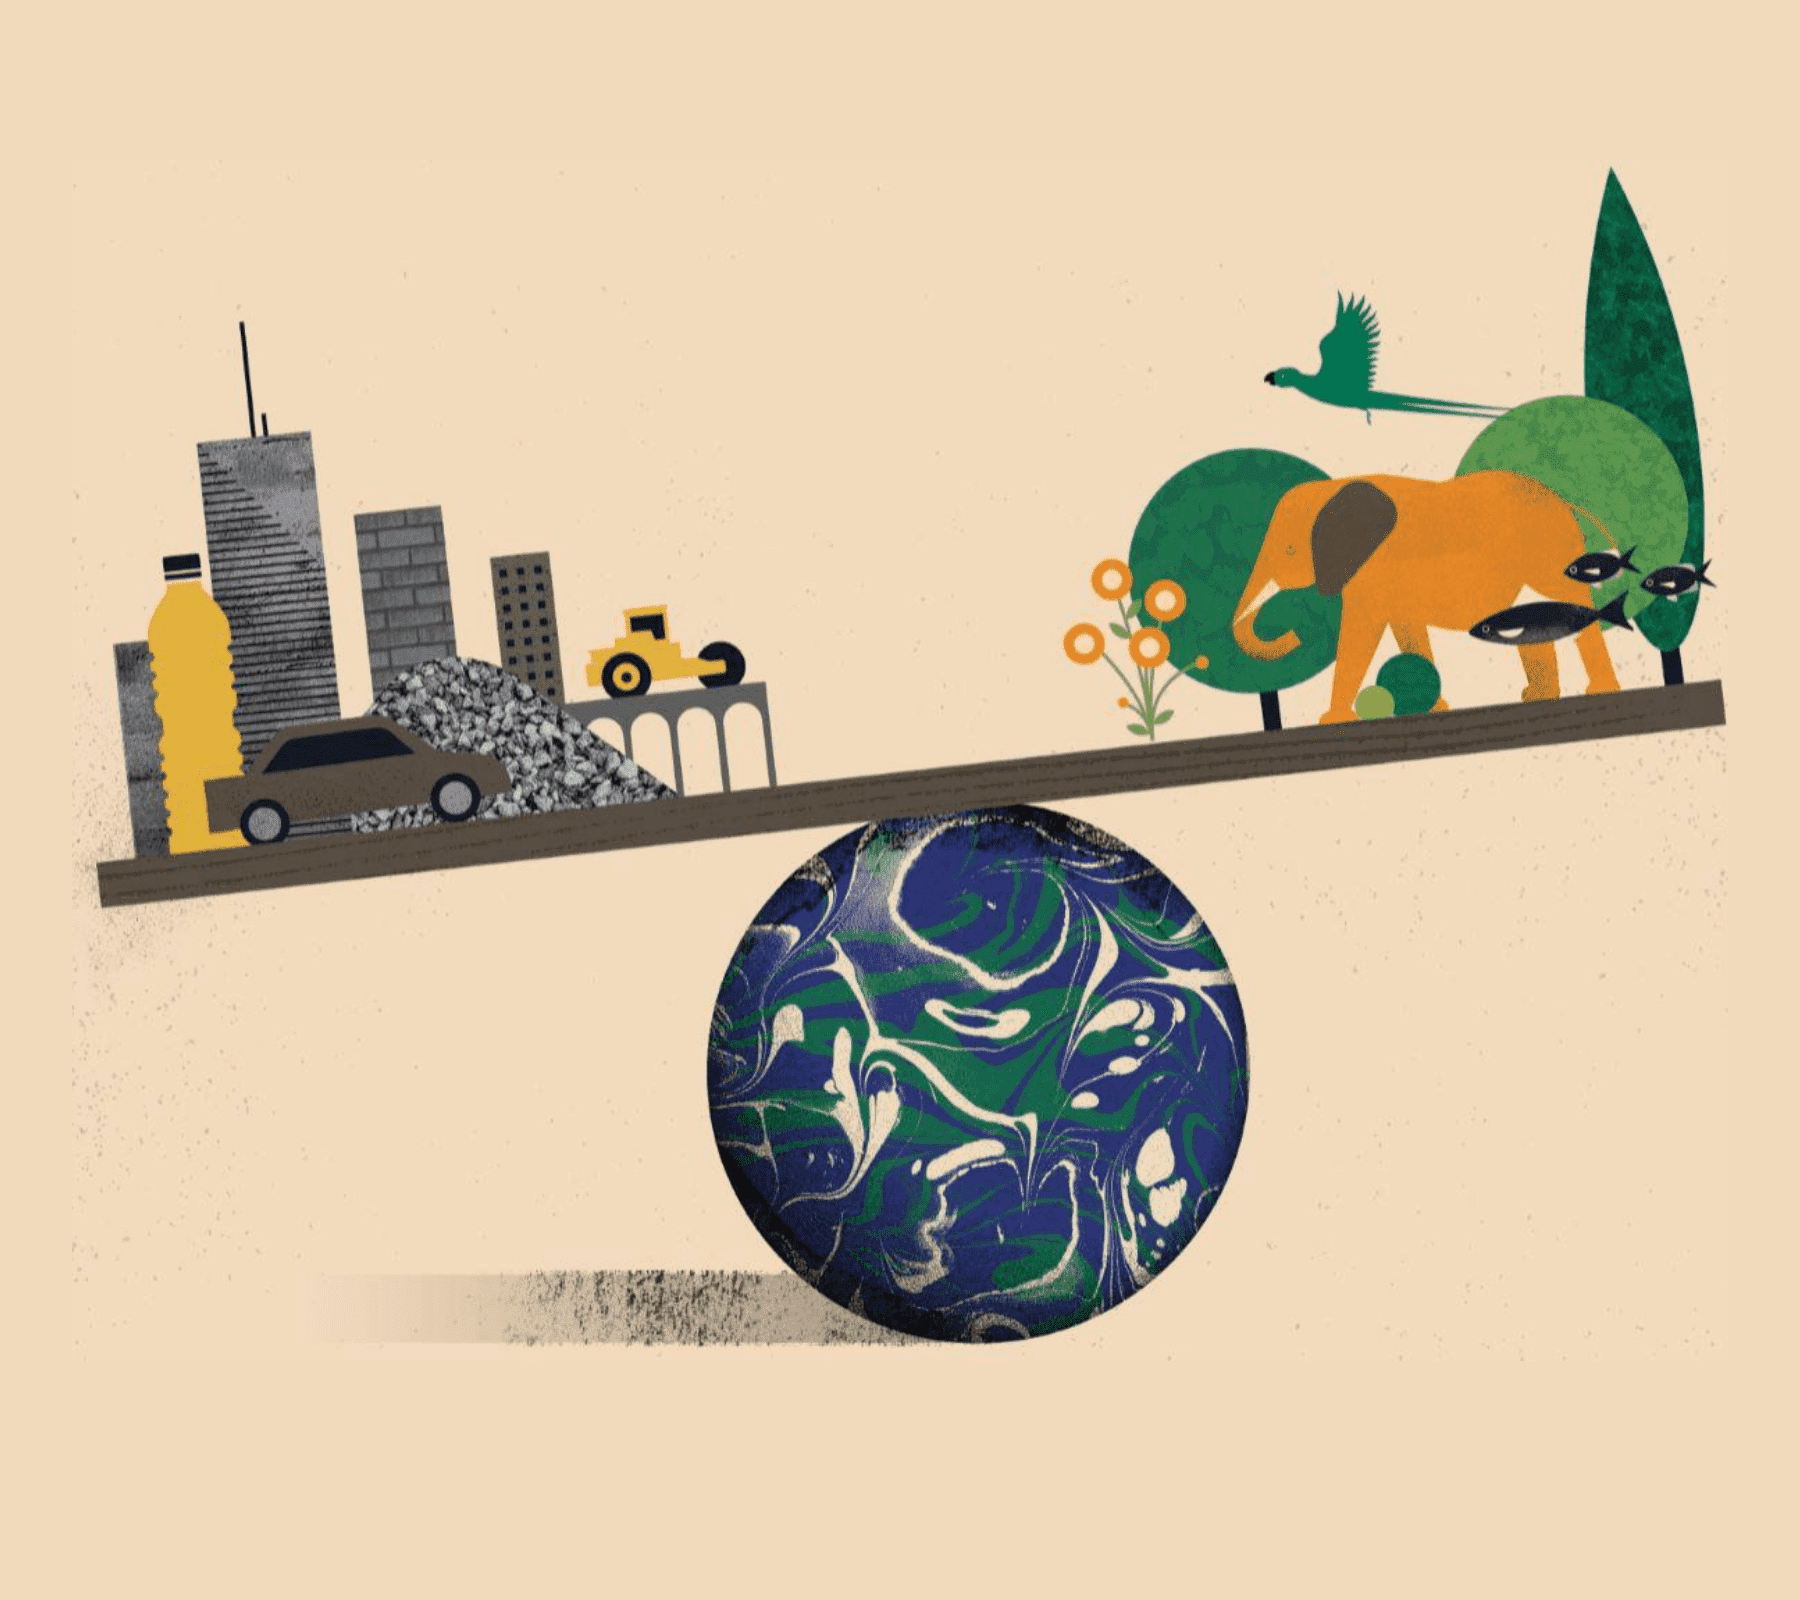 El planeta tierra balanceando a una ciudad y a un parque